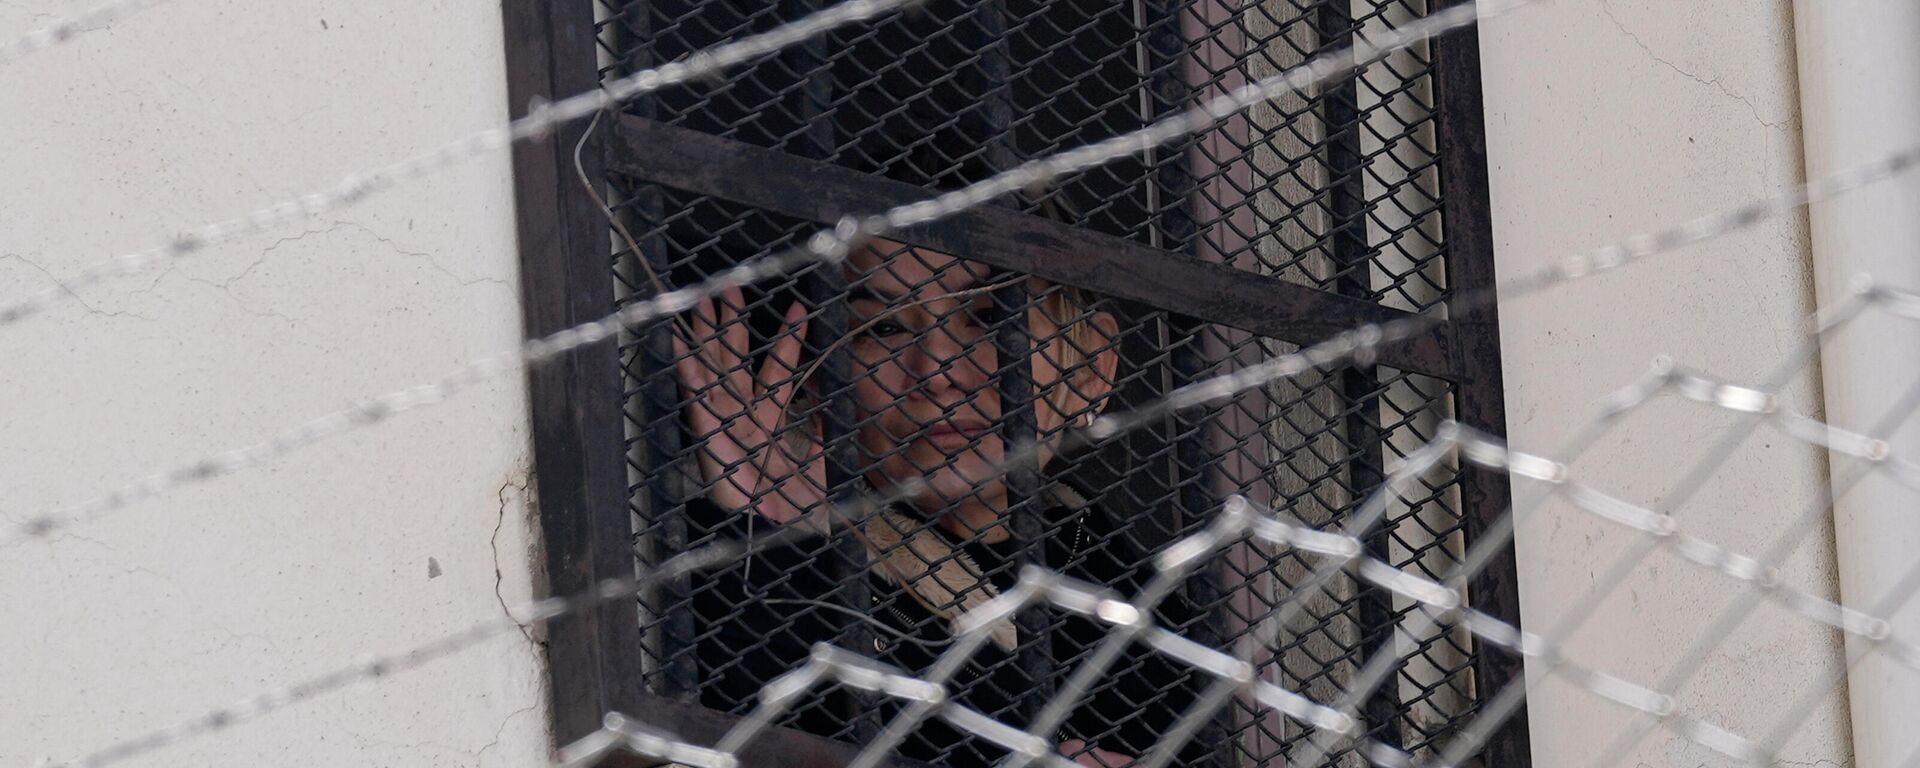 La expresidenta transitoria boliviana, Jeanine Áñez (2019-2020), en la cárcel - Sputnik Mundo, 1920, 16.05.2022